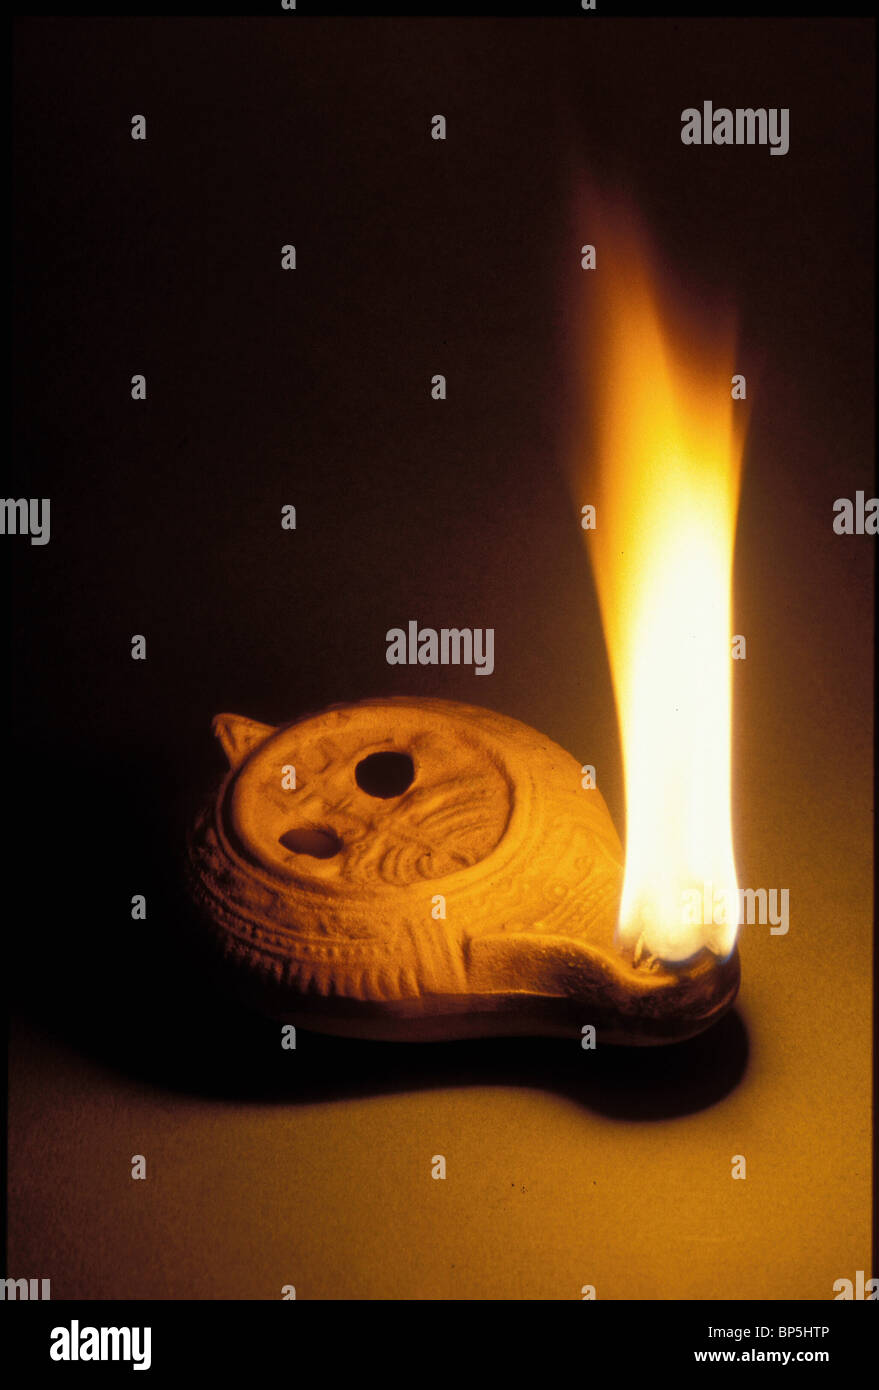 3329. Período romano tardío lámpara de aceite con el símbolo judío de las siete ramas candelabro; 'MENORAH' Foto de stock